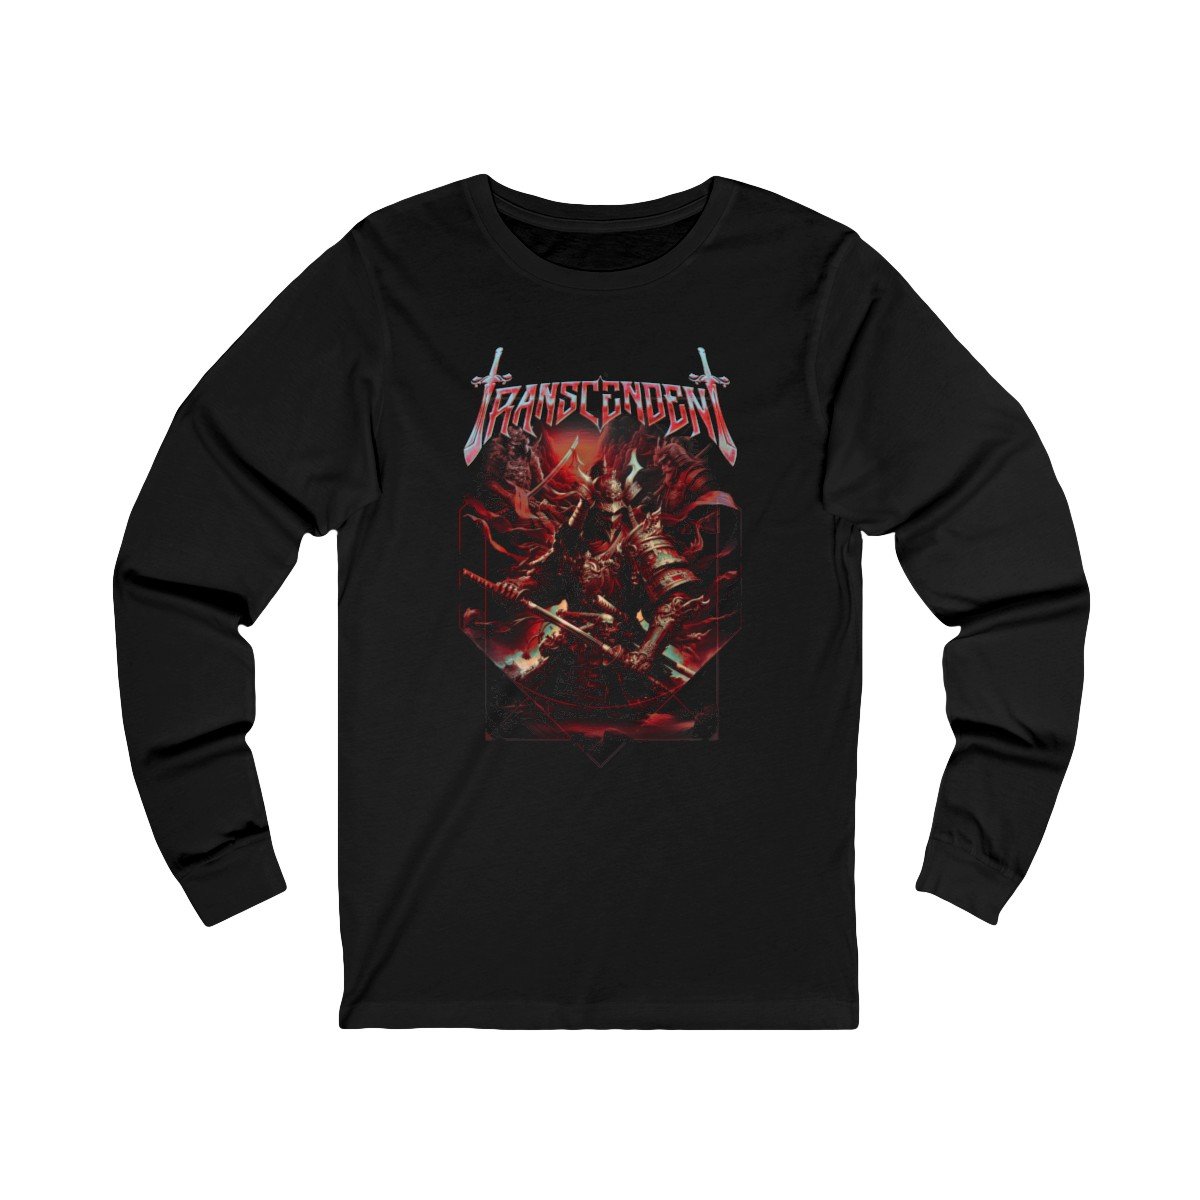 Transcendent – Samurai Long Sleeve Tshirt